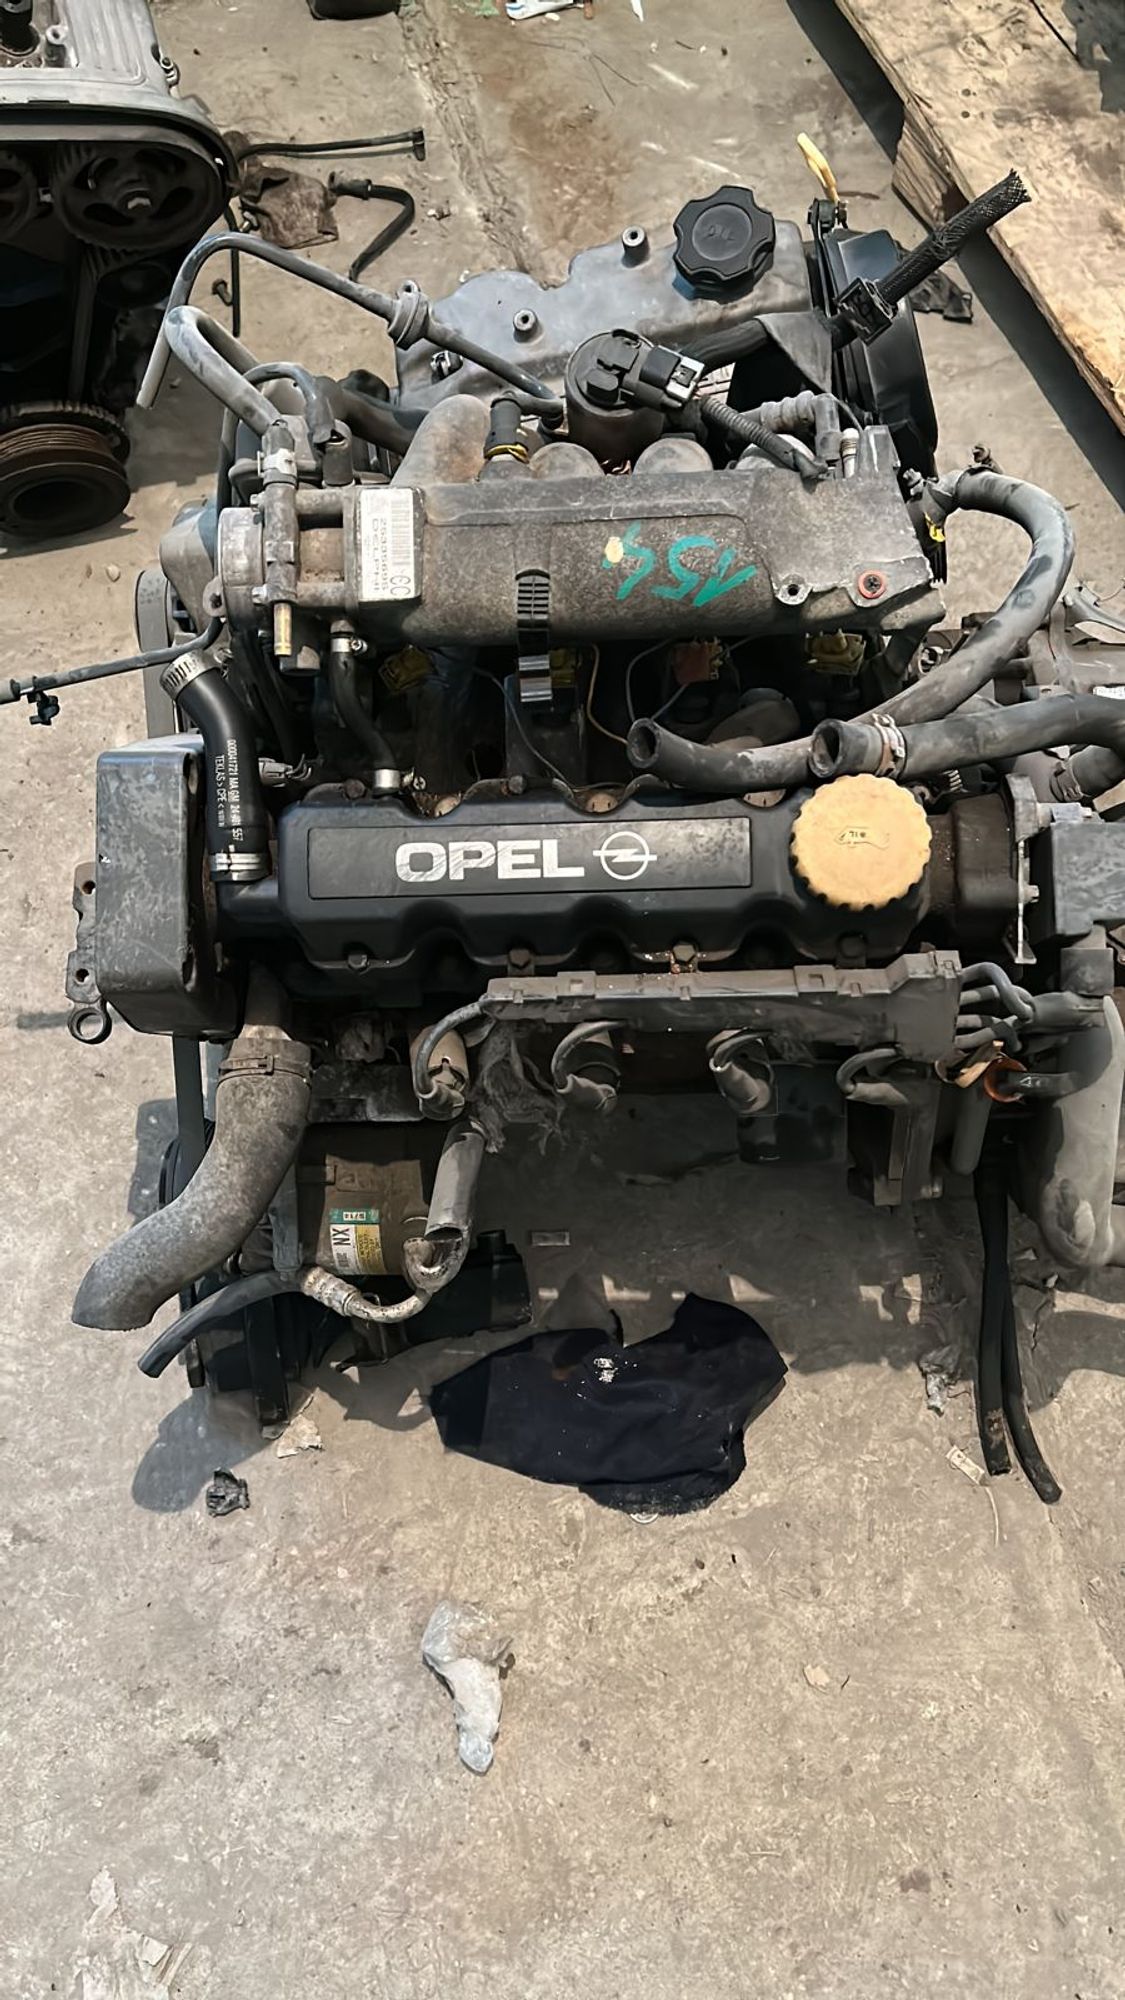 Двигатель в сборе Opel Astra, G 